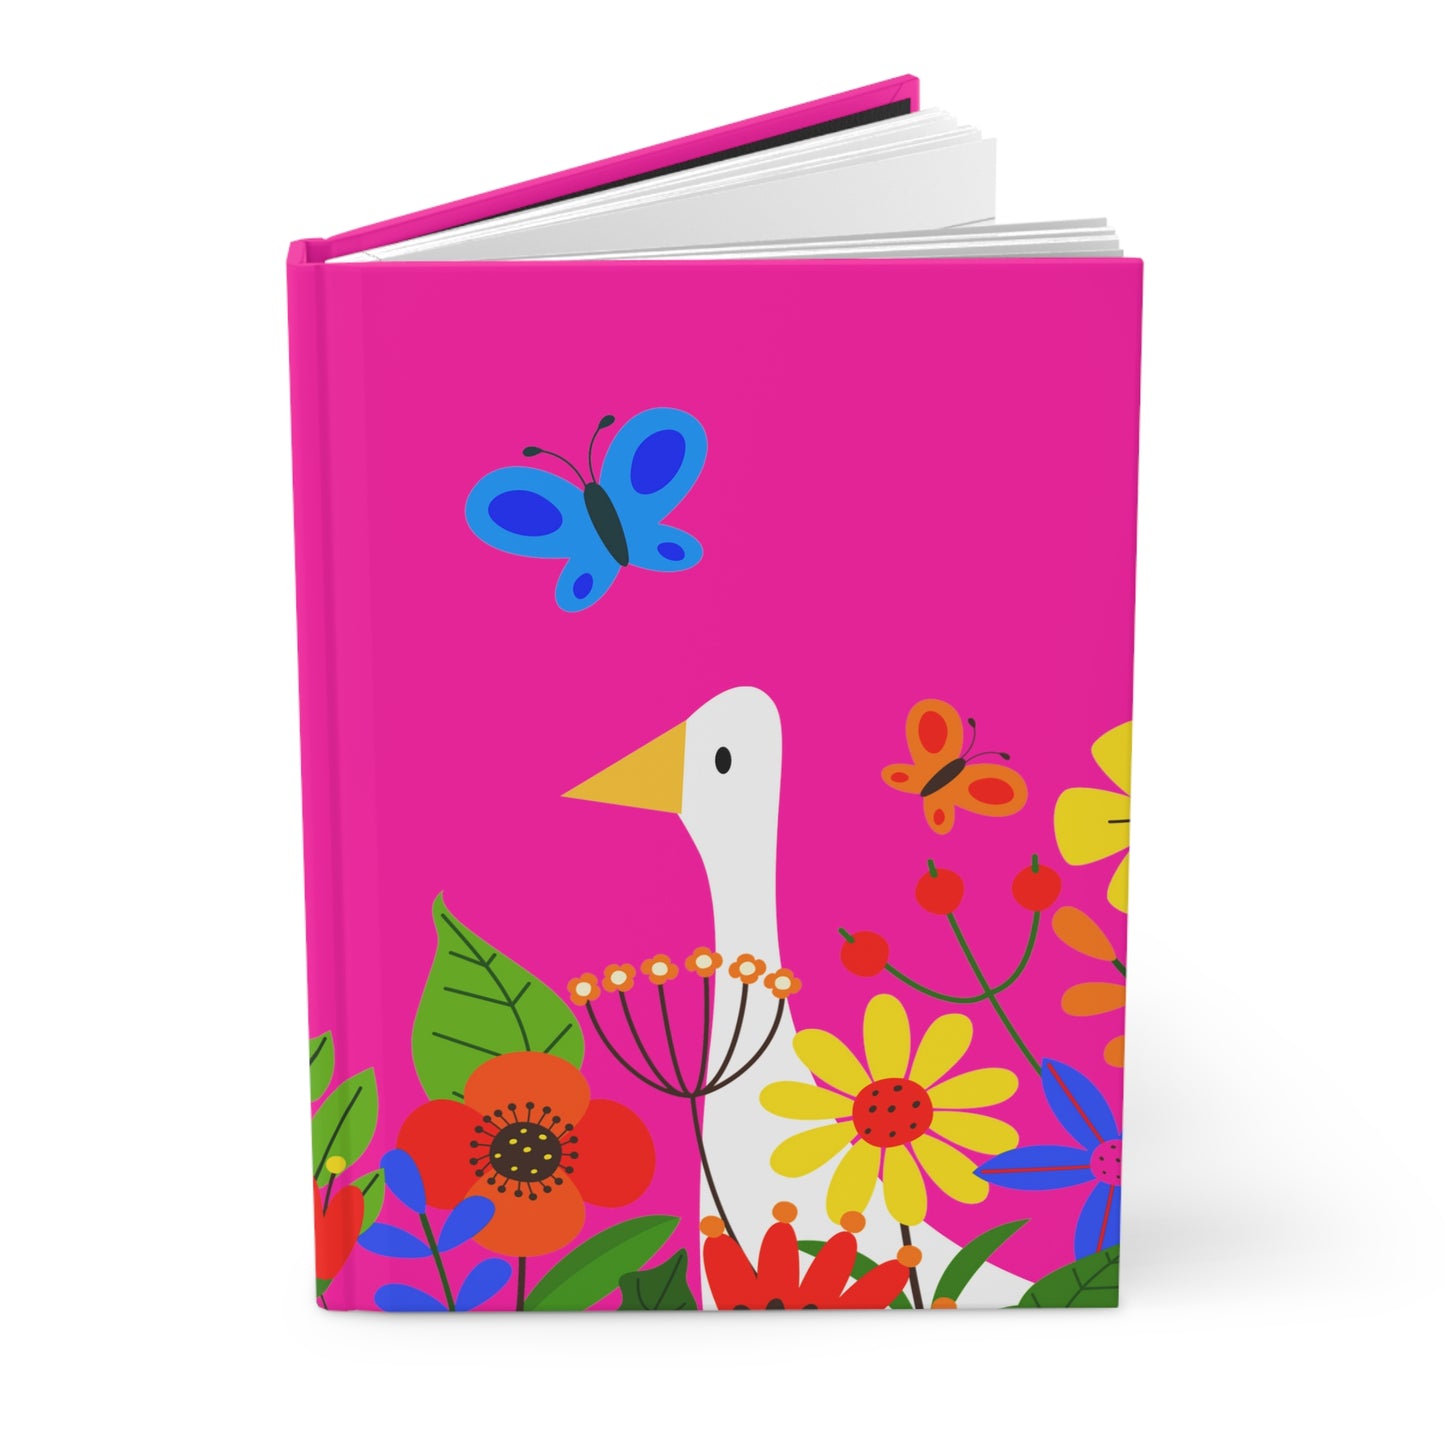 Bright Summer flowers - Mean Girls Lipstick ff00a8 - Hardcover Journal Matte